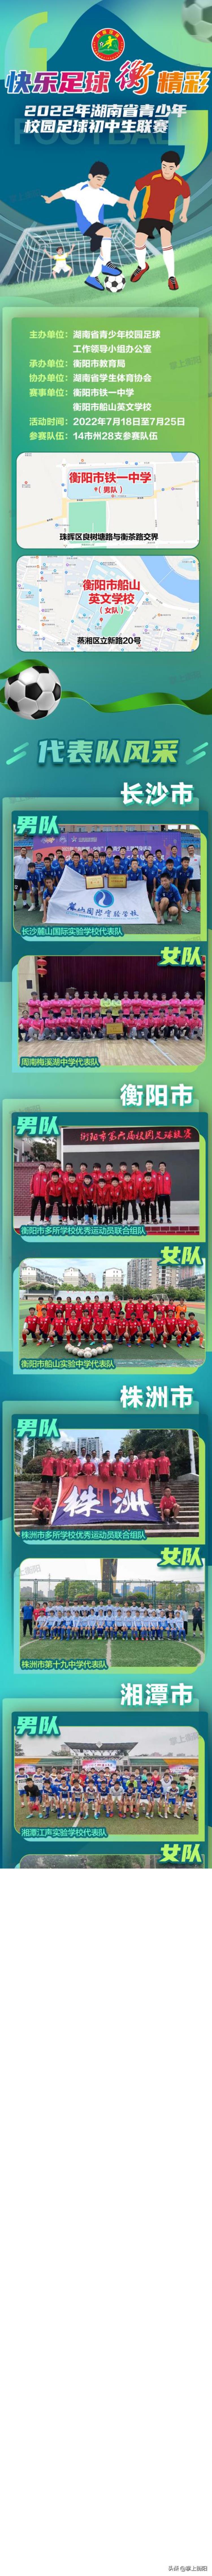 2021湖南省青少年校园足球最佳阵容「28支队伍参赛2022年湖南省青少年校园足球初中生联赛阵容曝光」